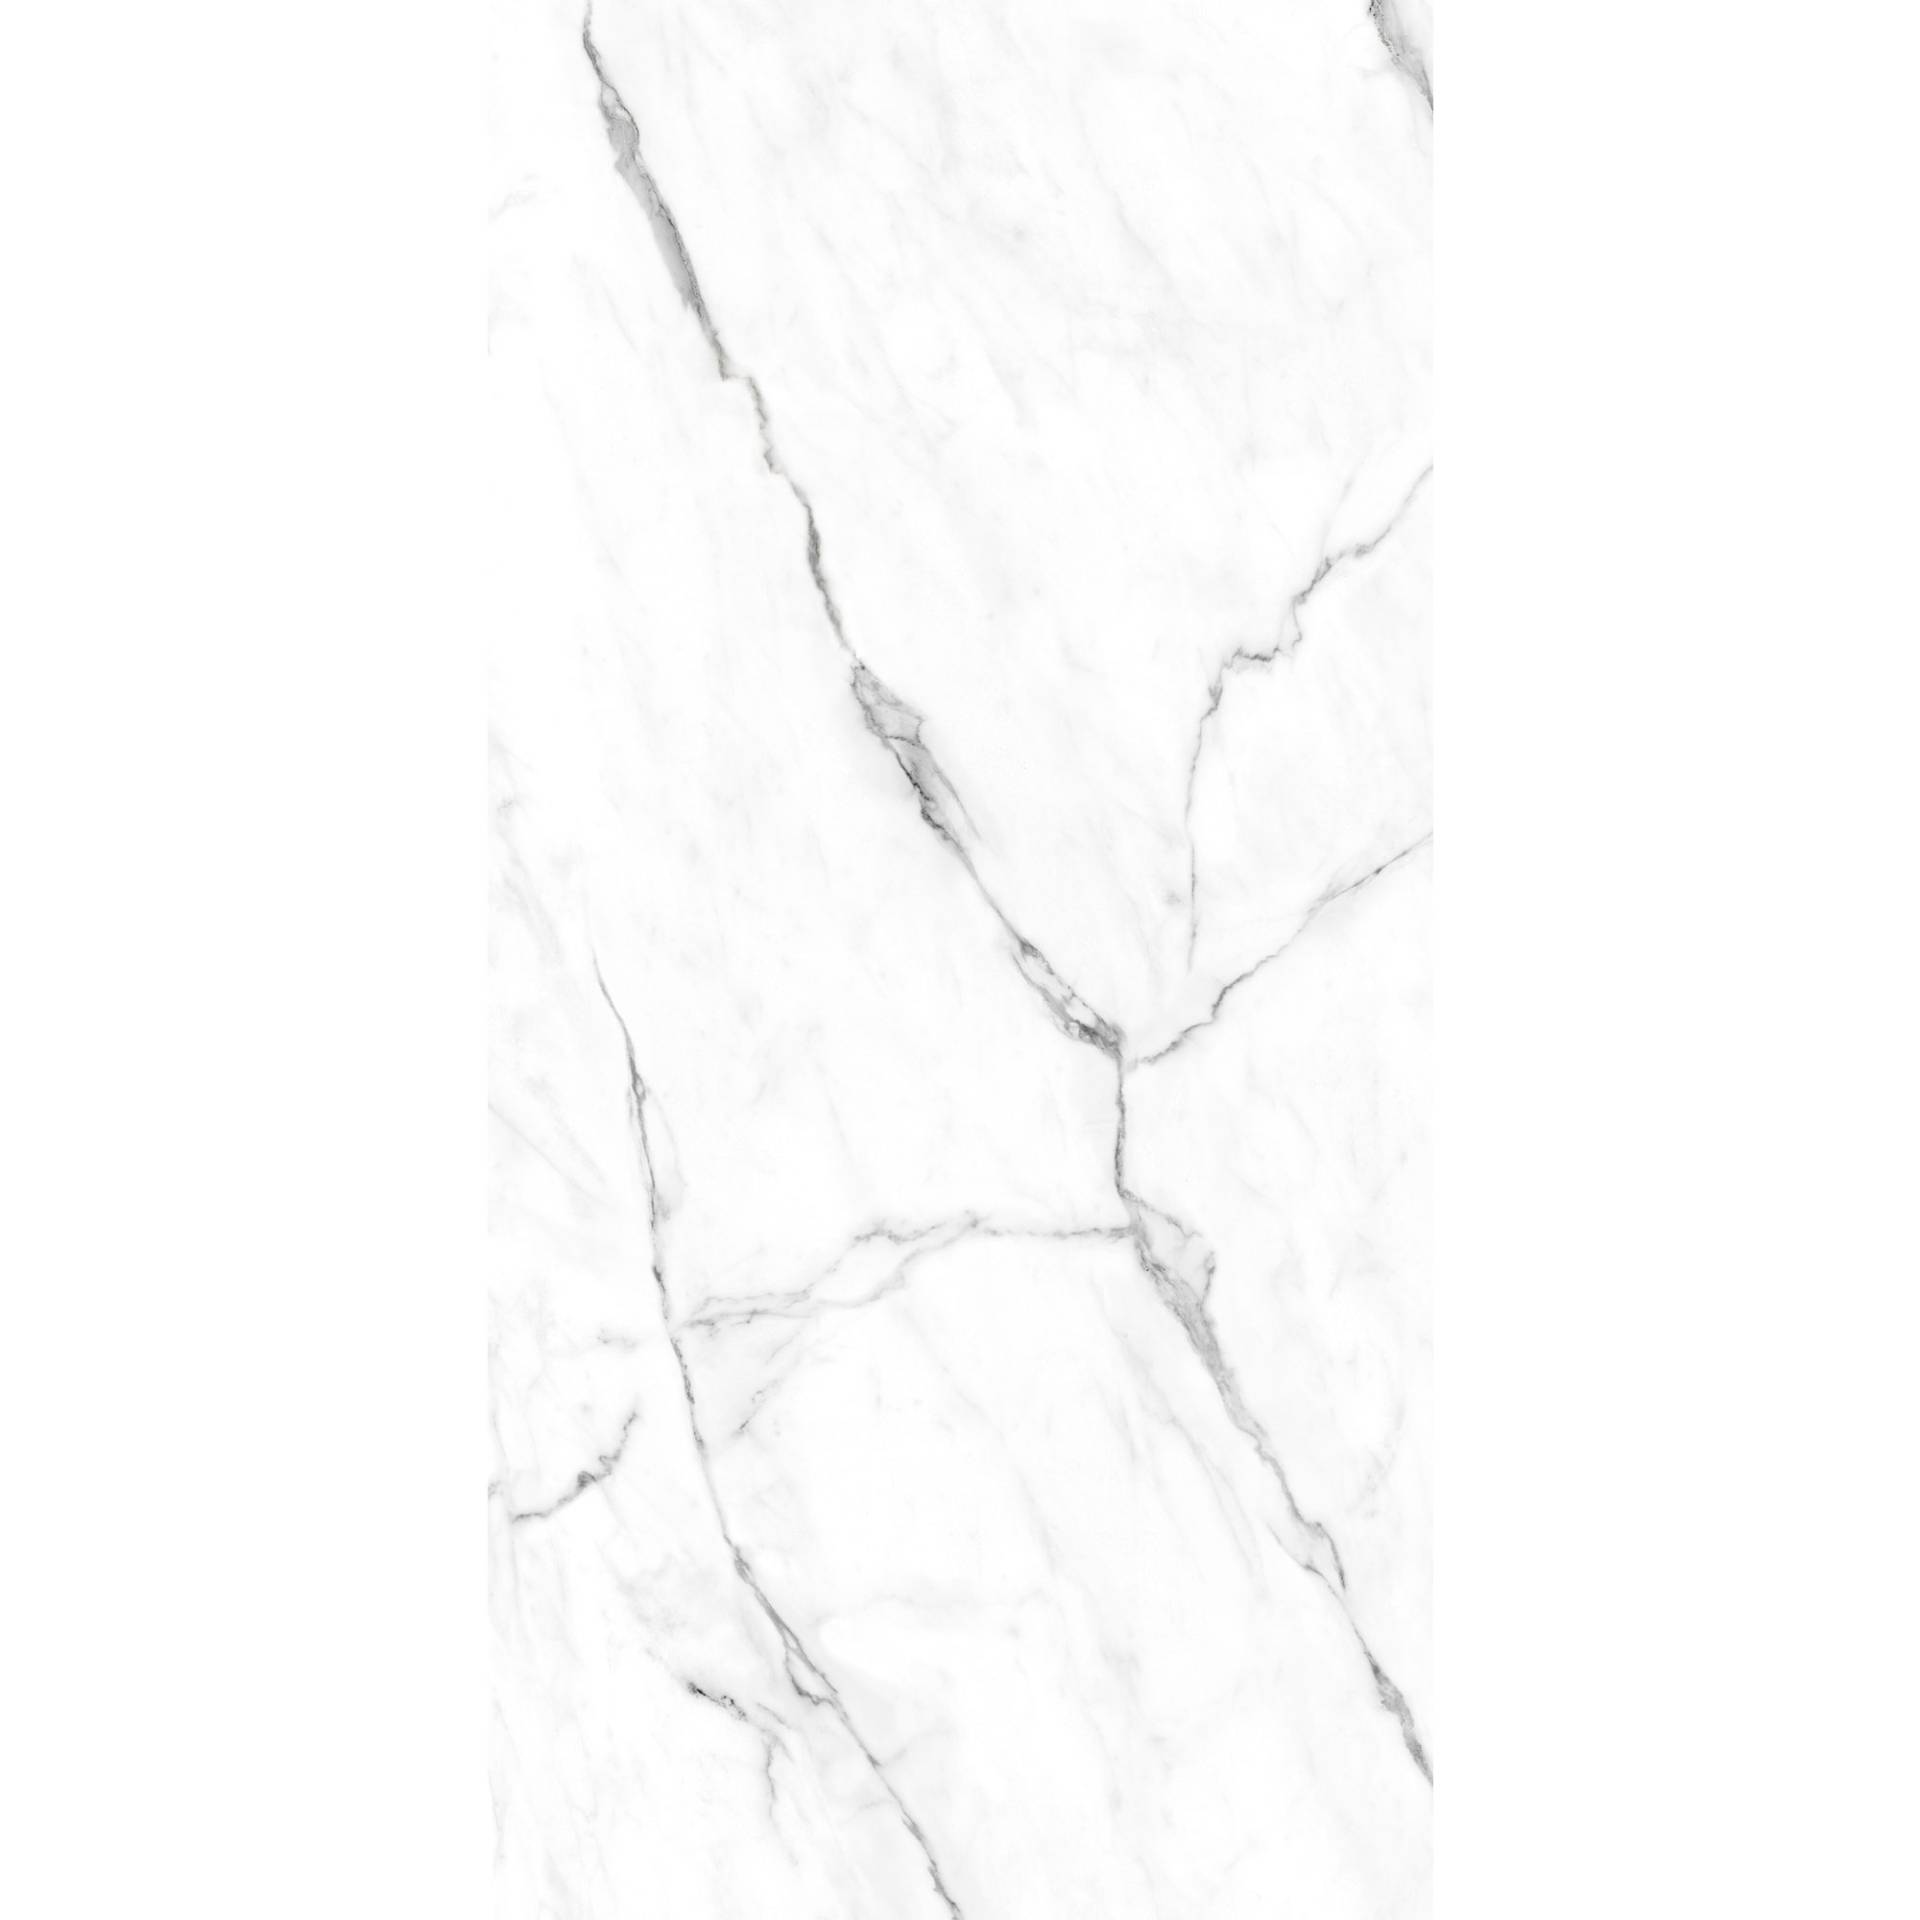 Breuer Rückwand 'Marmor-Weiß' hochglaz 150 x 255 cm von Breuer